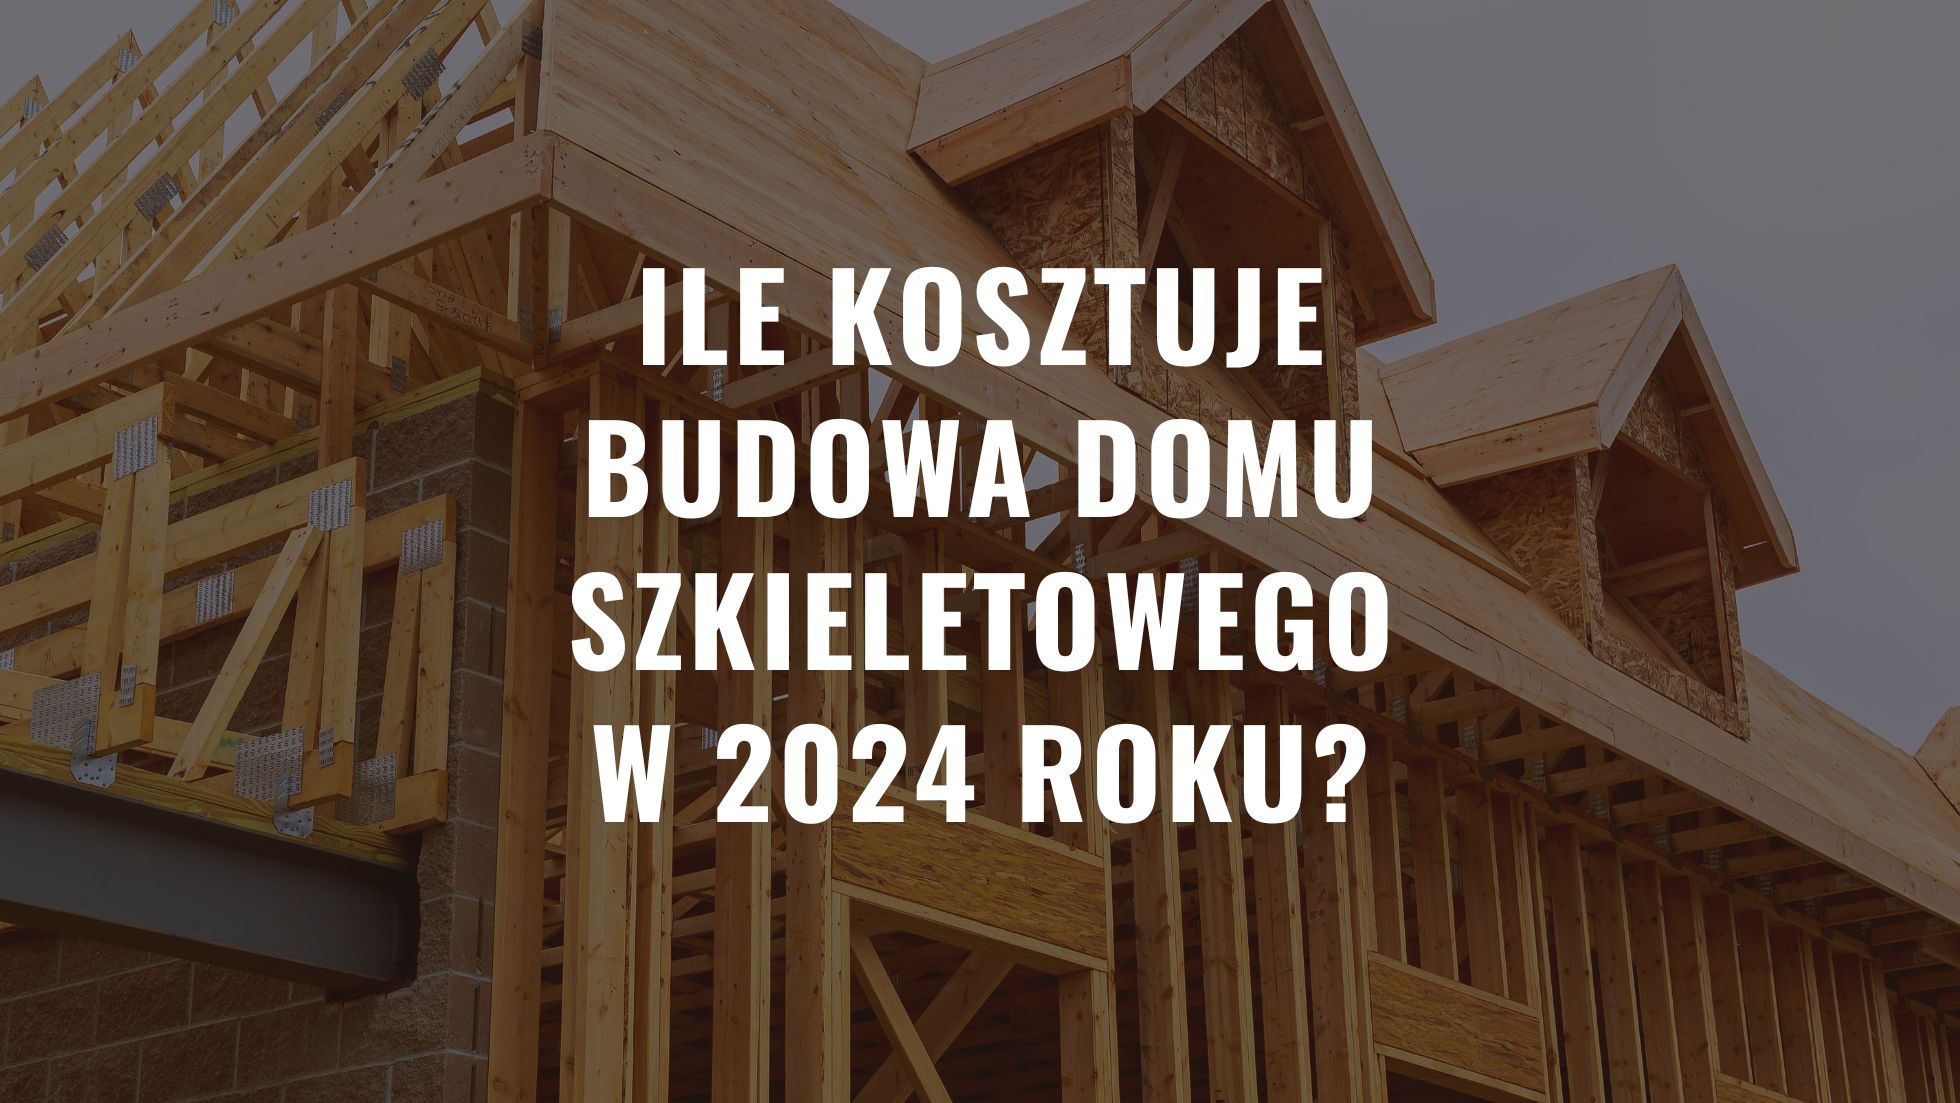 Ile kosztuje budowa domu szkieletowego w 2024 roku?